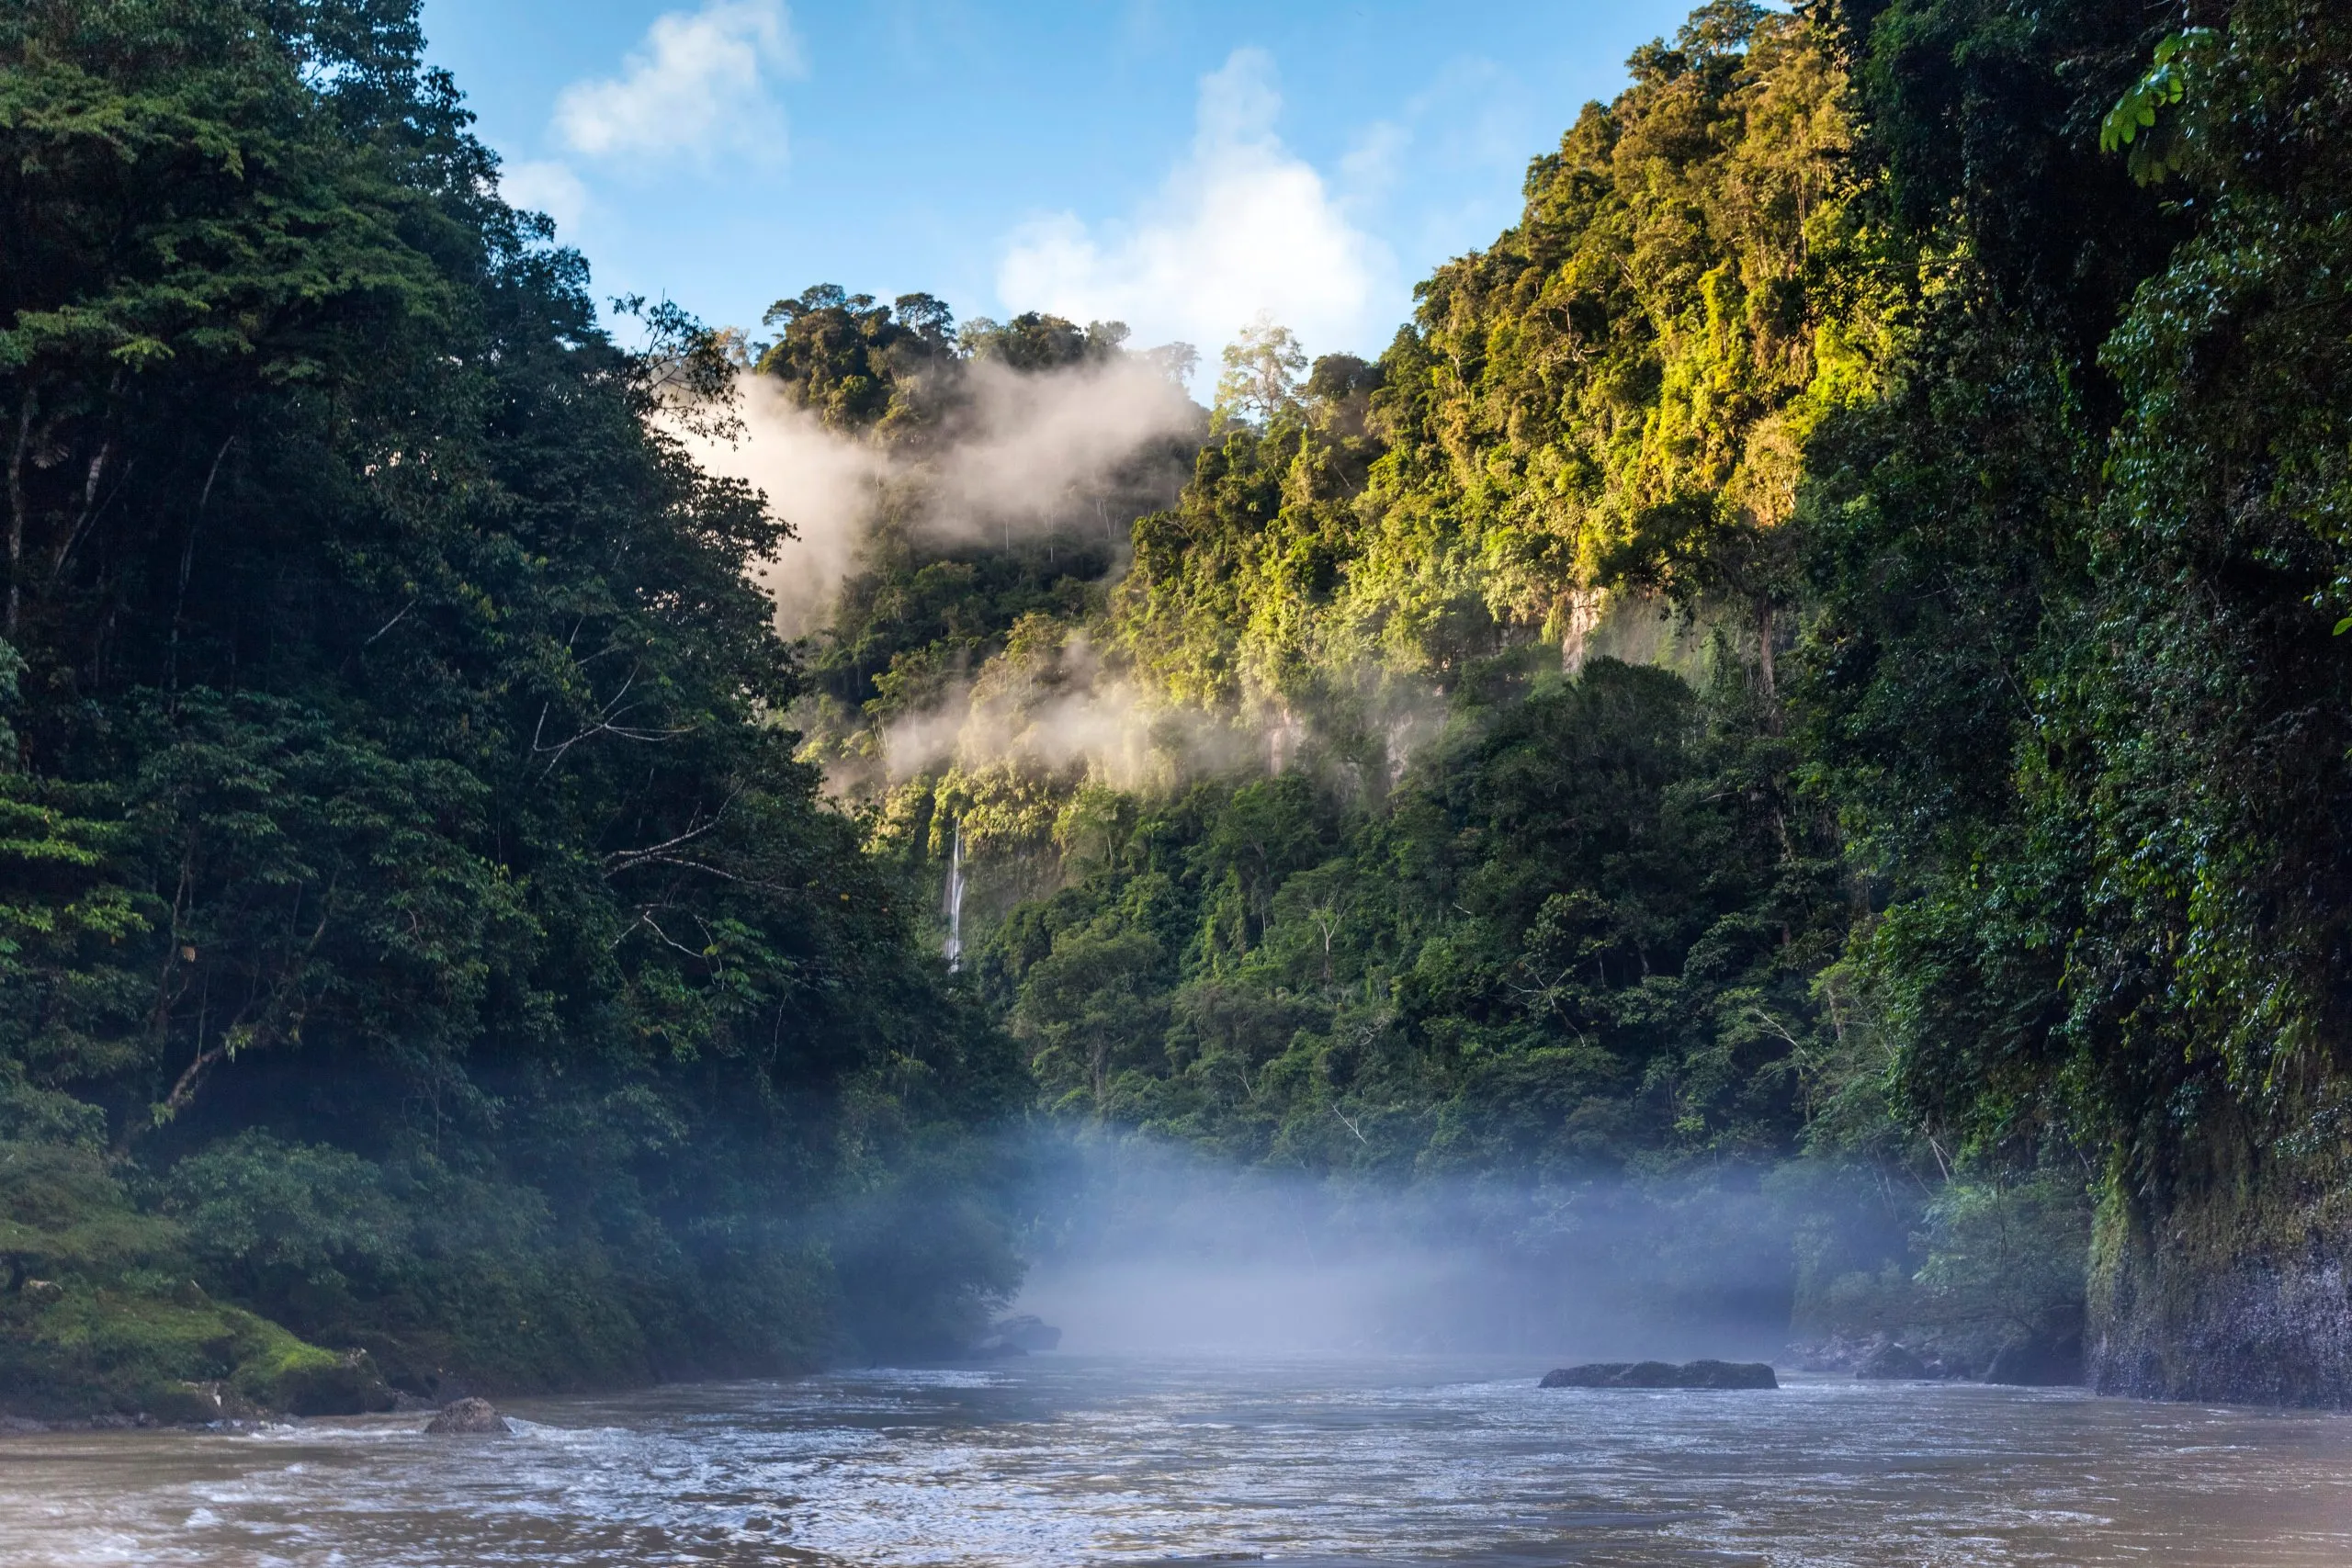 Jungle and River in the Peruvian Amazon